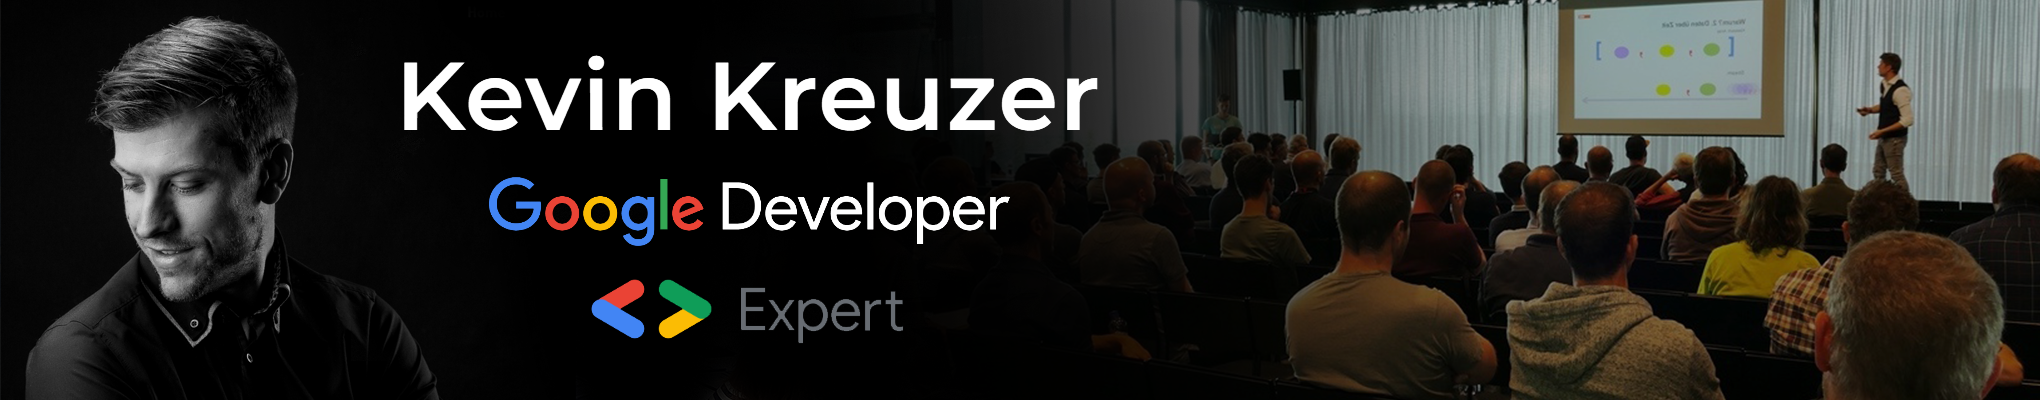 Kevin Kreuzer - Google Developer Expert for Angular